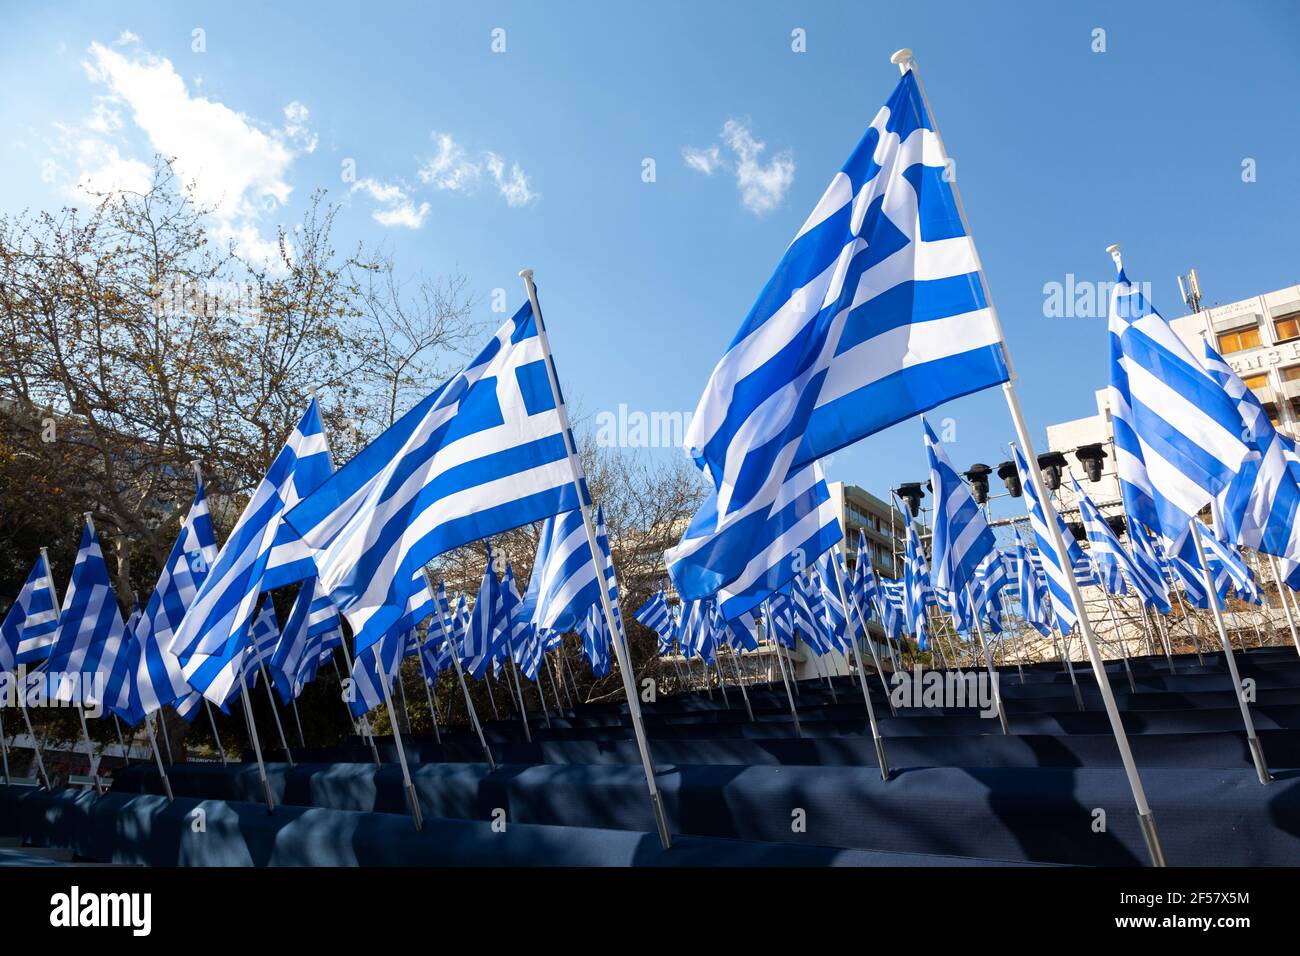 Bandiere greche che sventolano in piazza Syntagma, Atene, Grecia, durante le celebrazioni per i 200 anni della Giornata greca dell'Indipendenza (25 marzo 1821-2021). Foto Stock